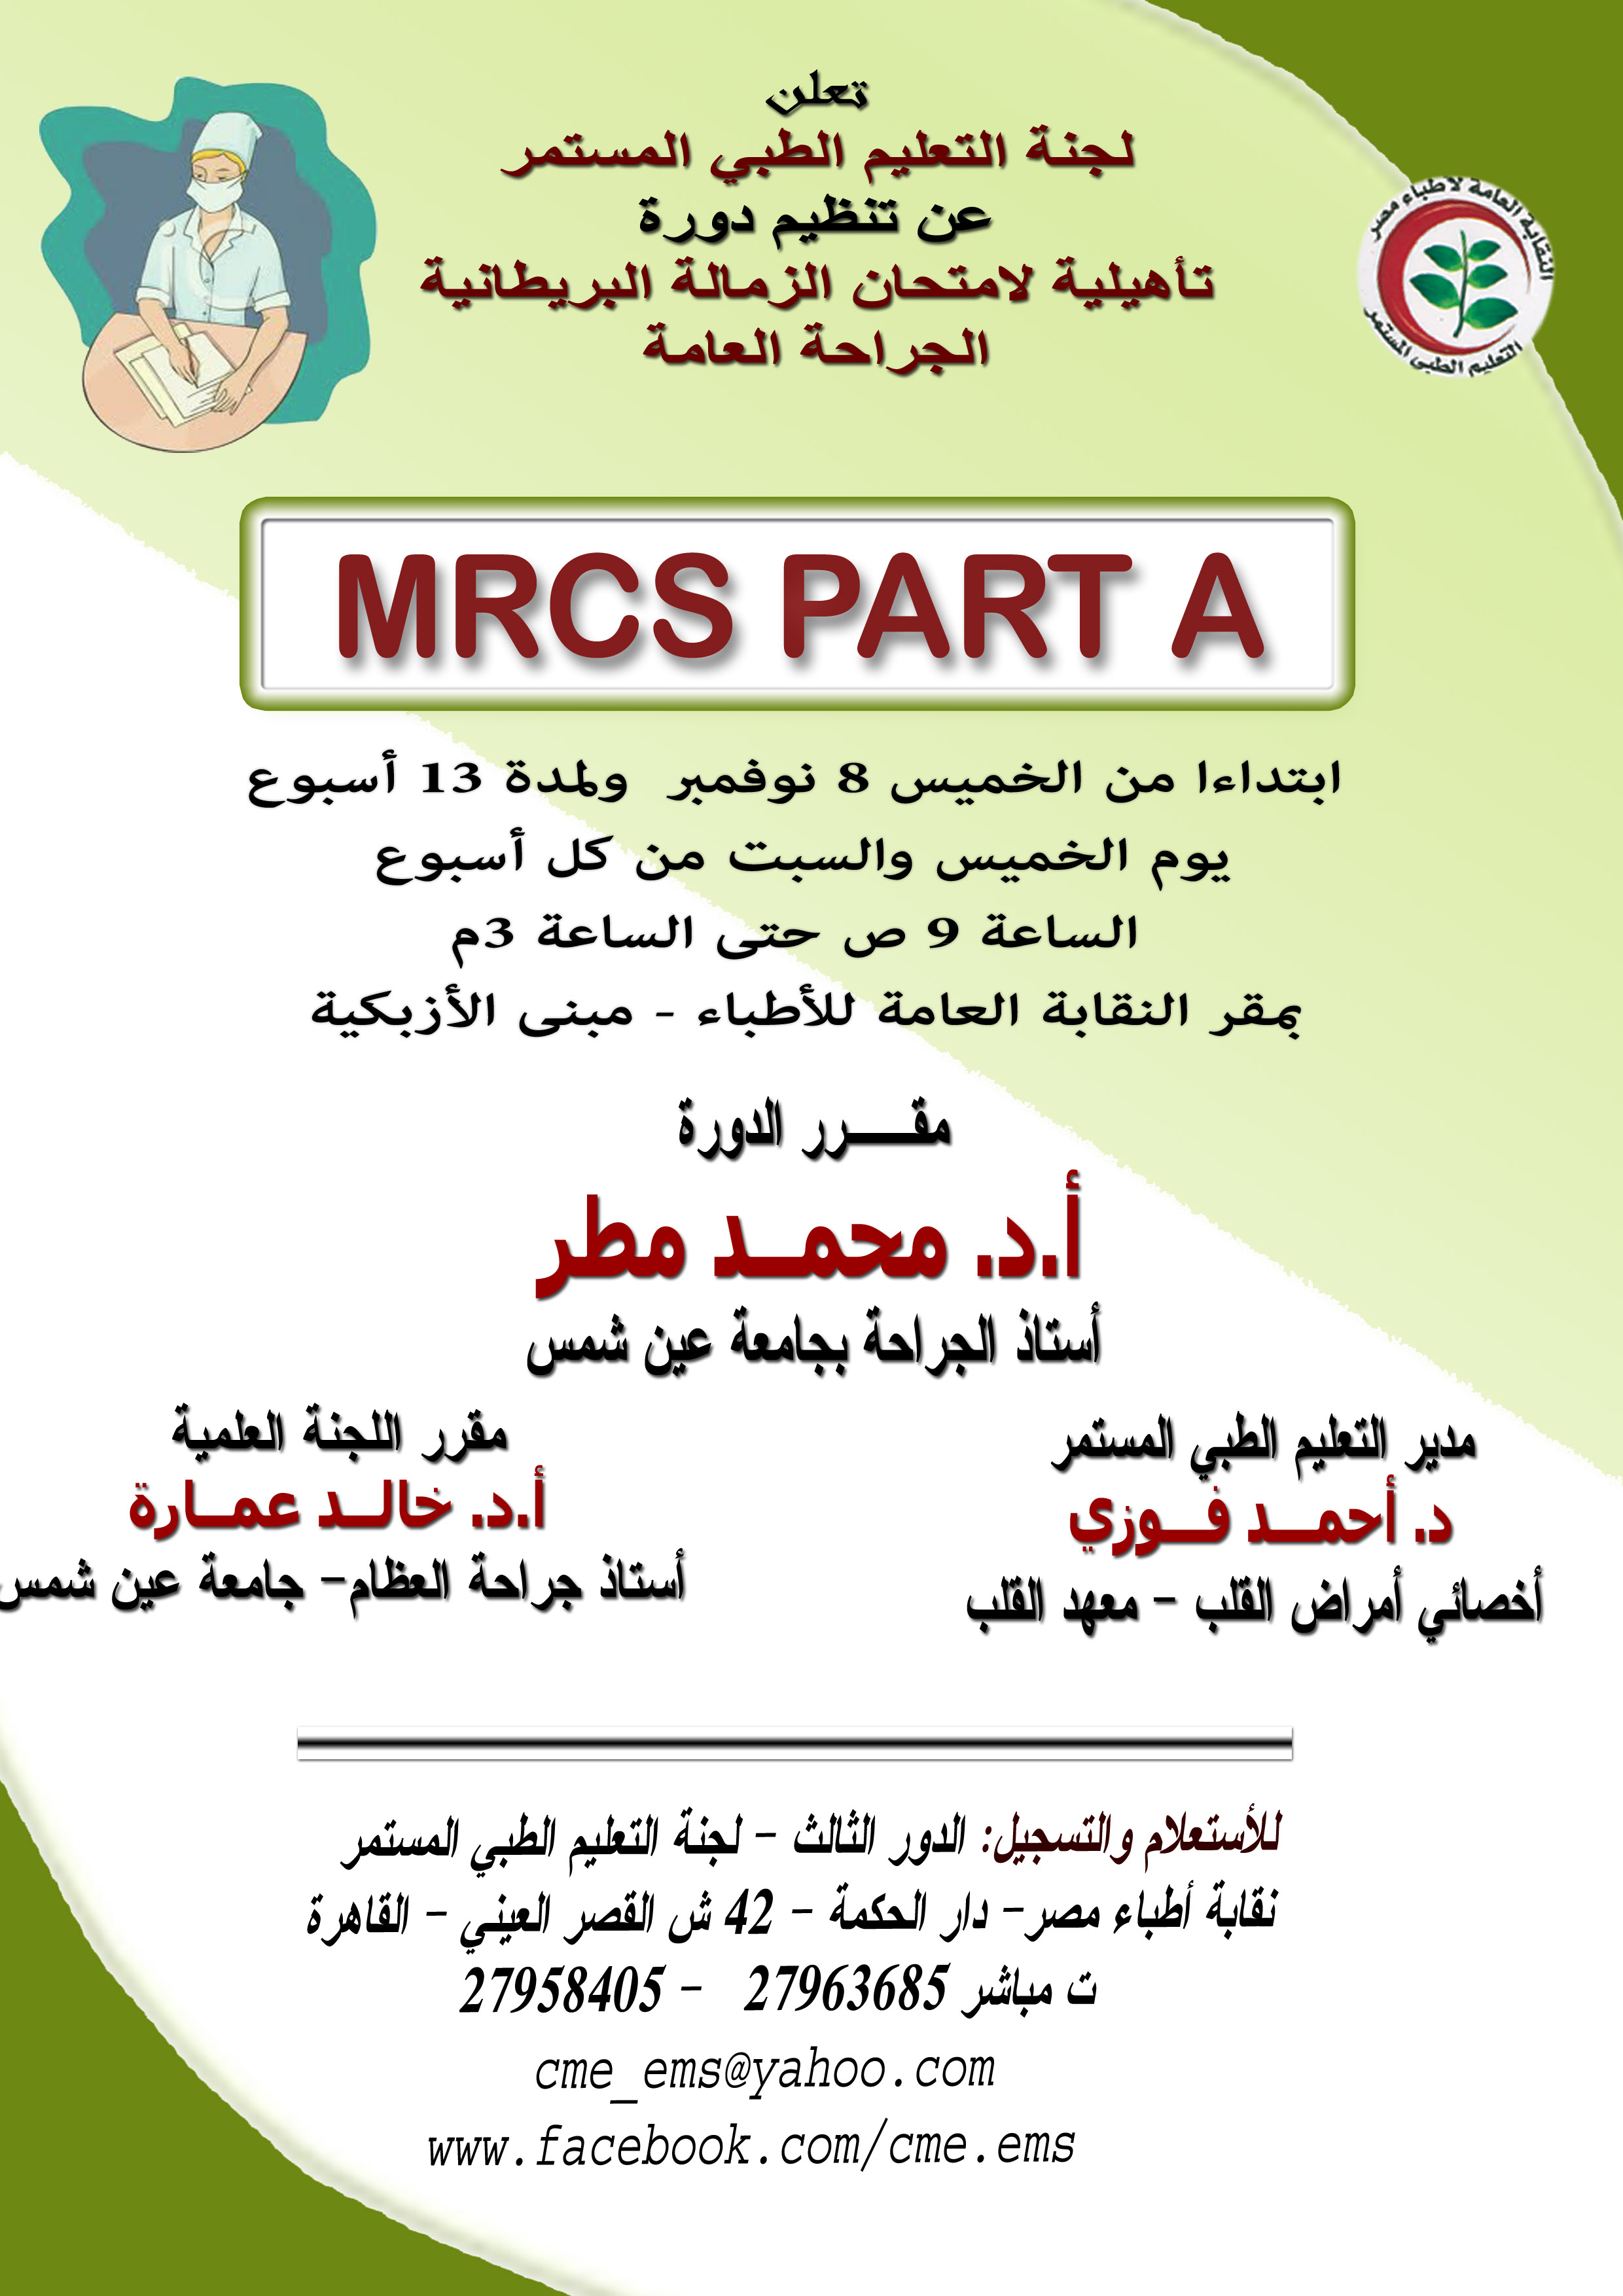 MRCS Part